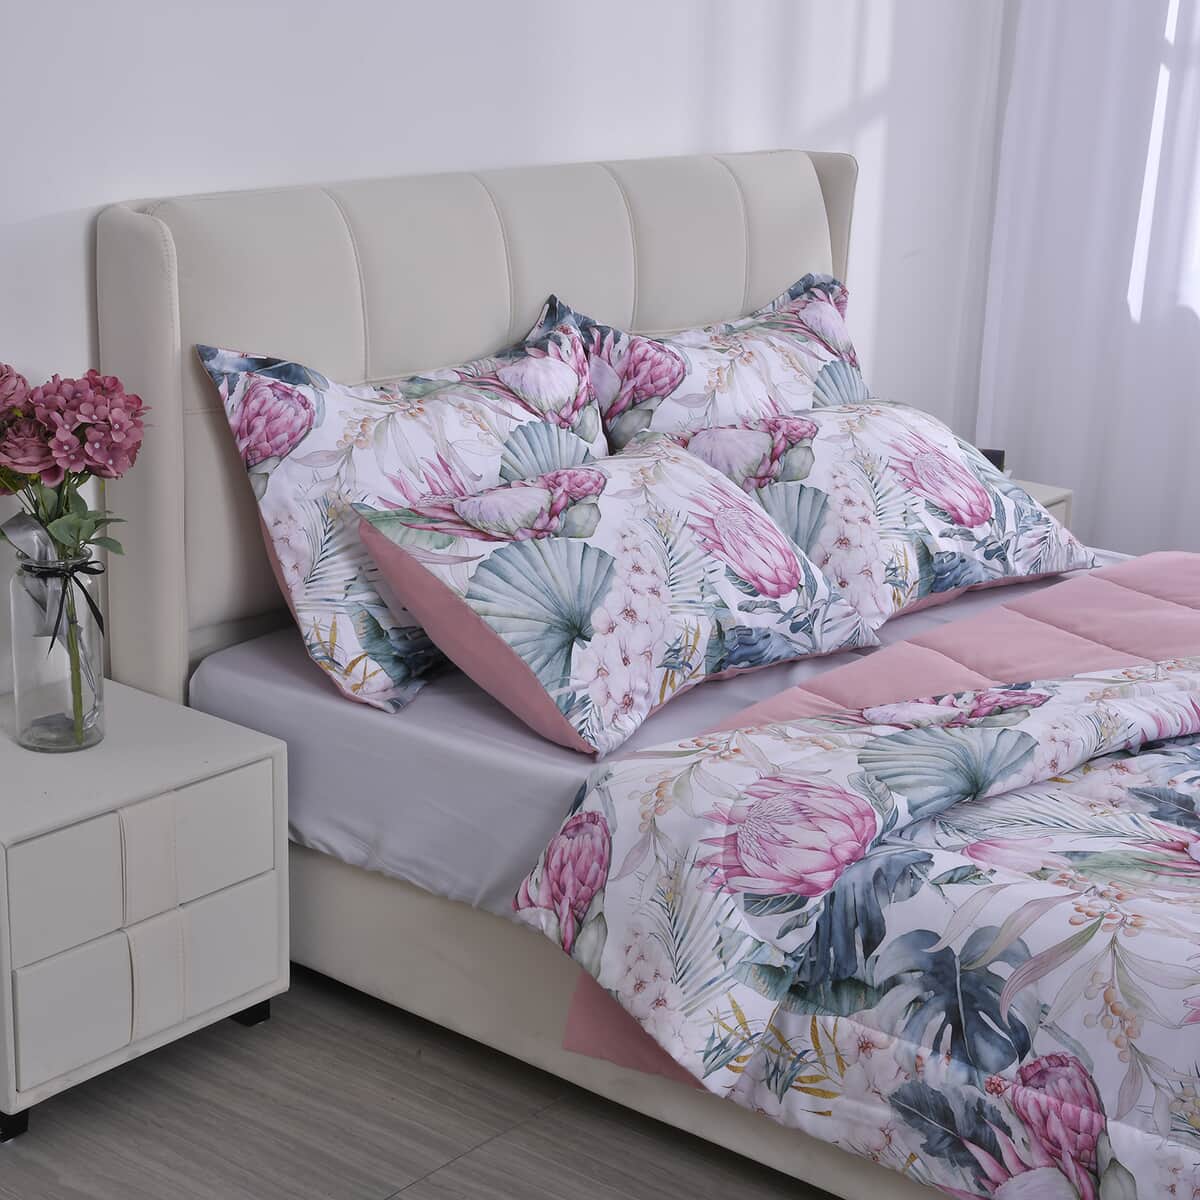 Homesmart Pink Digital Floral Printed Polyester 5pcs Comforter Set - King image number 2